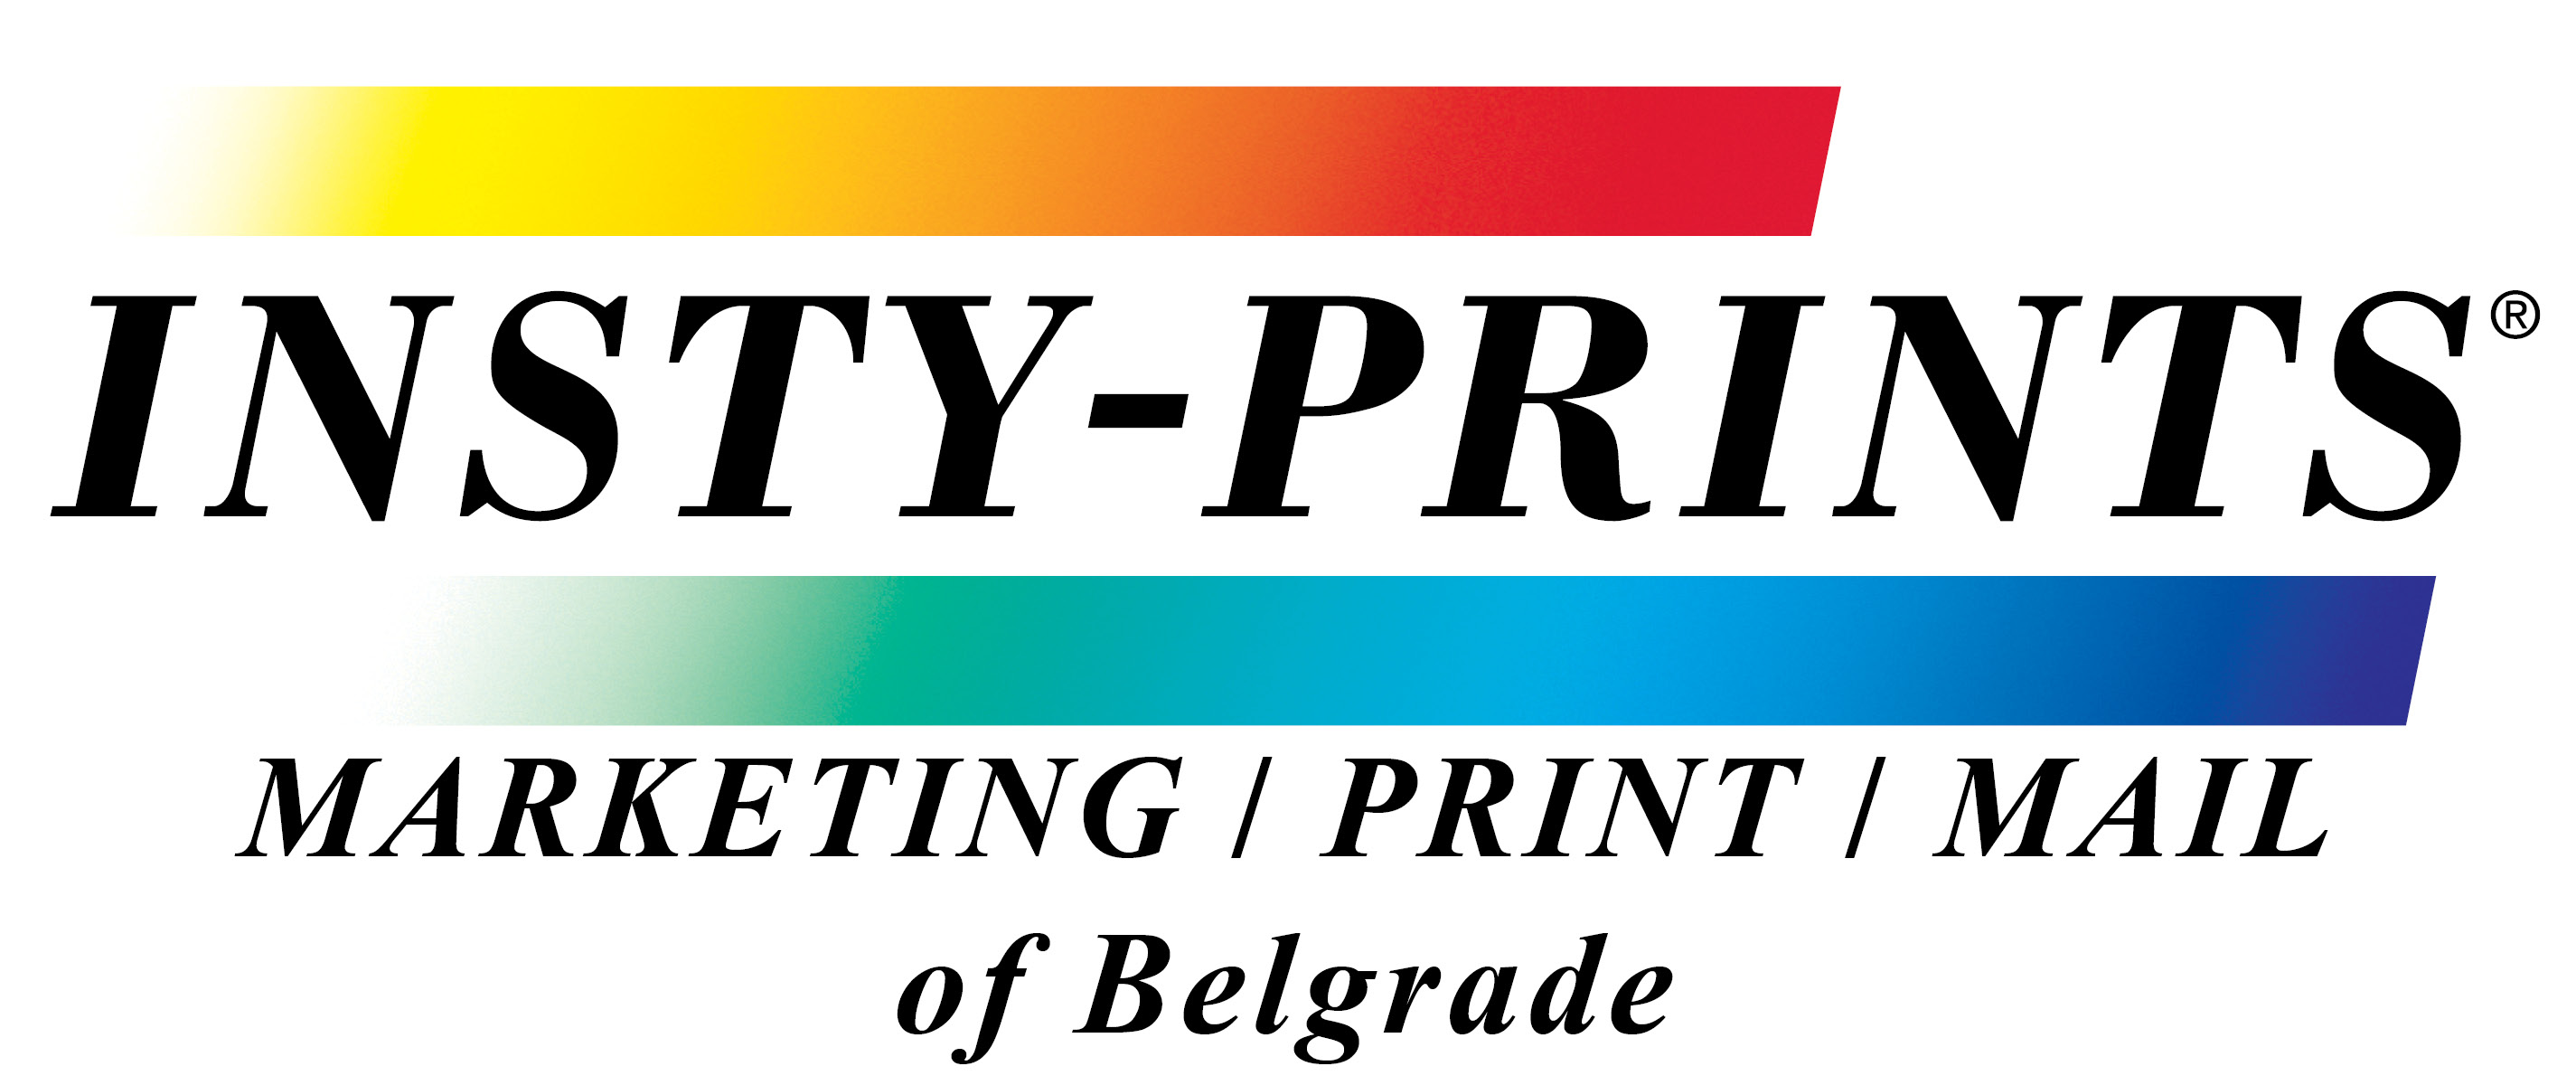 Insty Prints of Belgrade, MT 59714's Logo